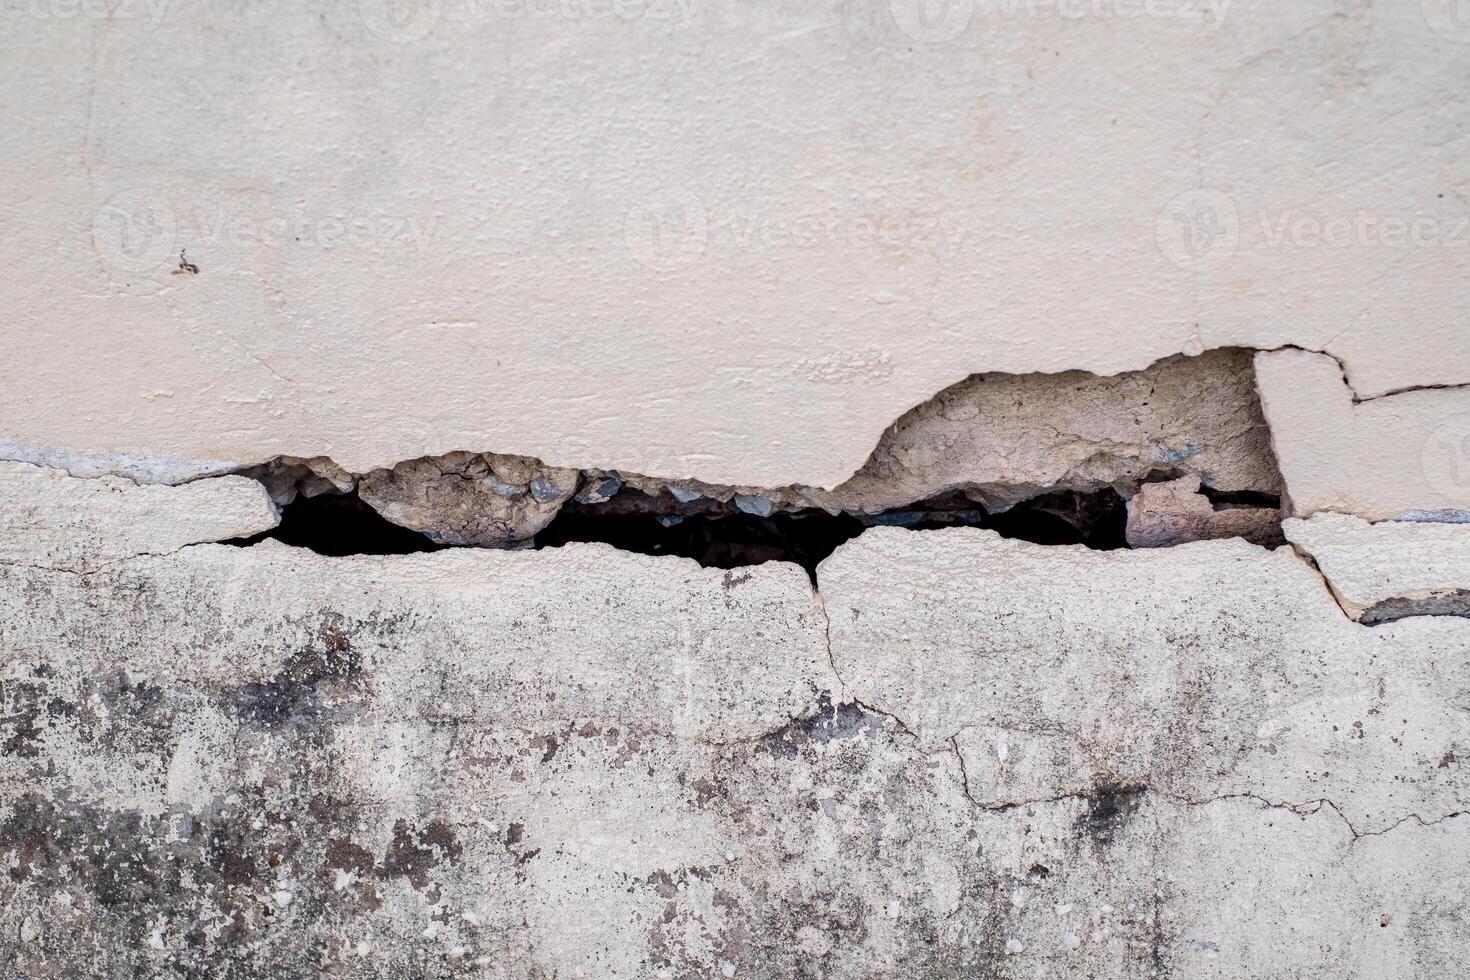 mur de béton fissuré mur cassé au coin de ciment extérieur qui a été affecté par un tremblement de terre et un sol effondré photo